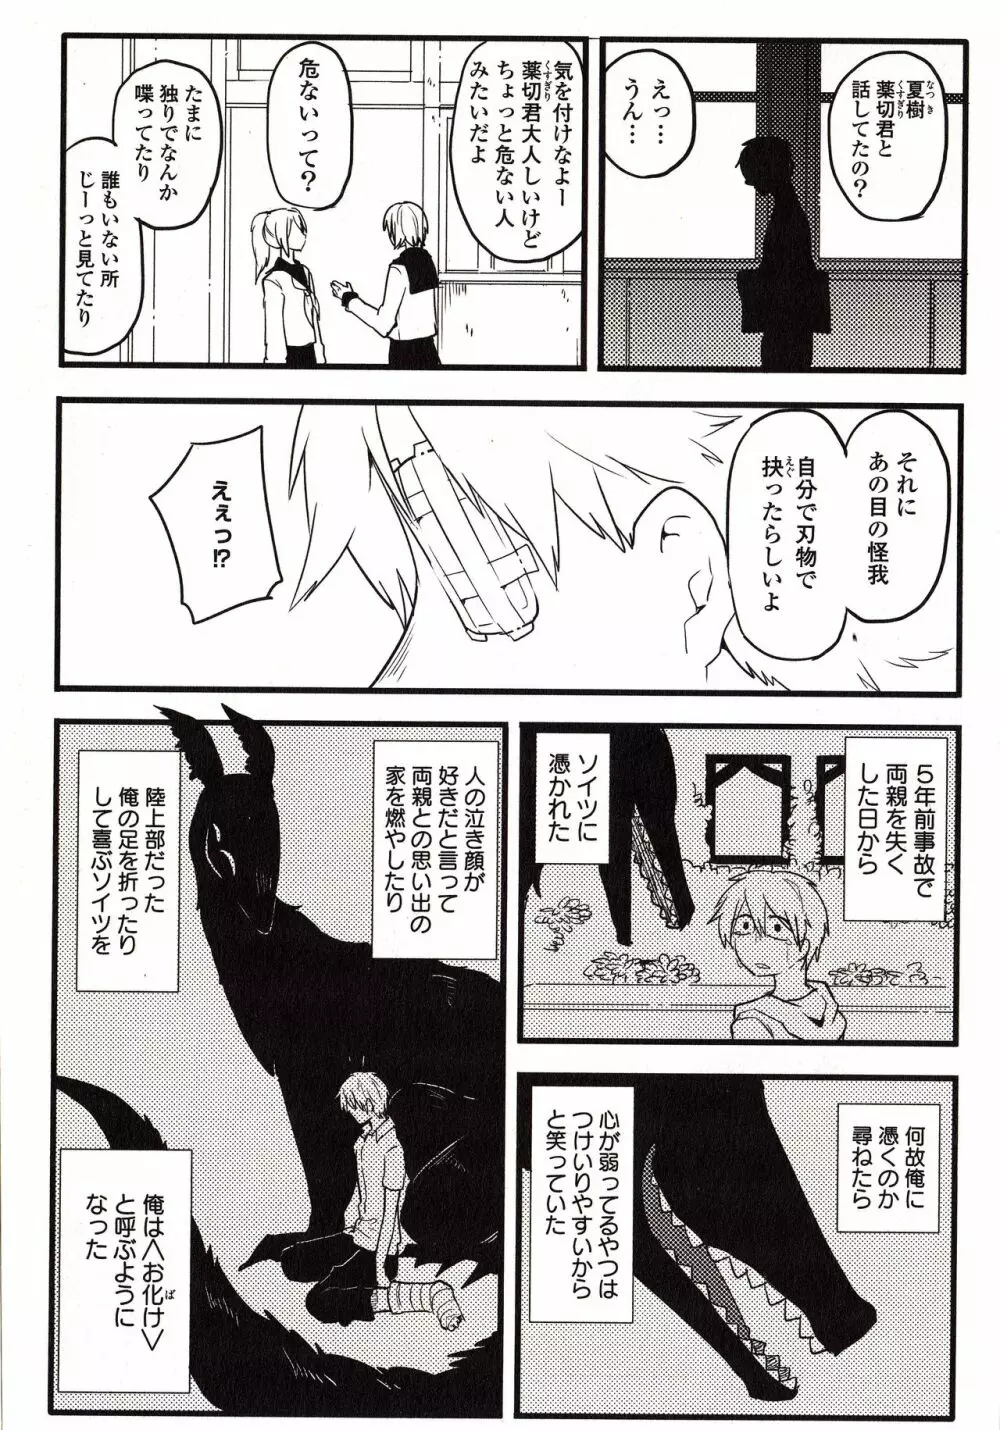 Sanzo manga 7ページ